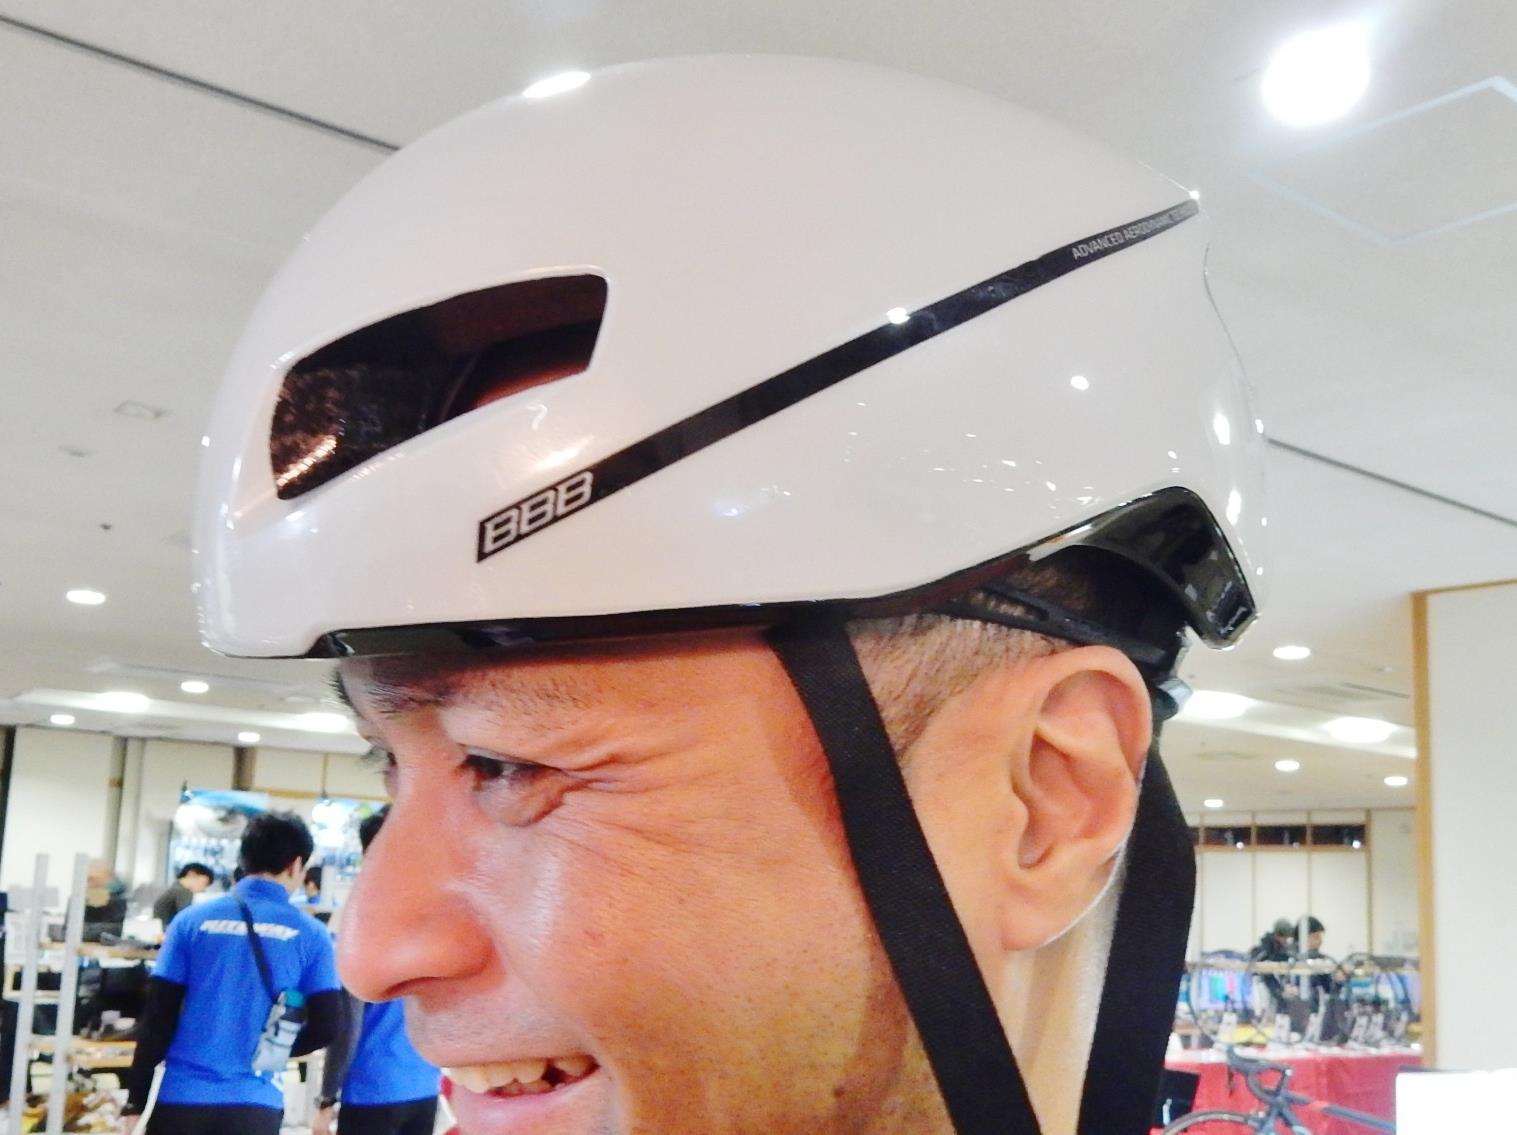 BBB　bbb　FDJ fdj エフデジ　オランダメーカー　アイウェア　ヘルメット　工具　ウェア　パーツ　ロードバイク　ツール・ド・フランス　広島県福山市　FINE fine ファイン